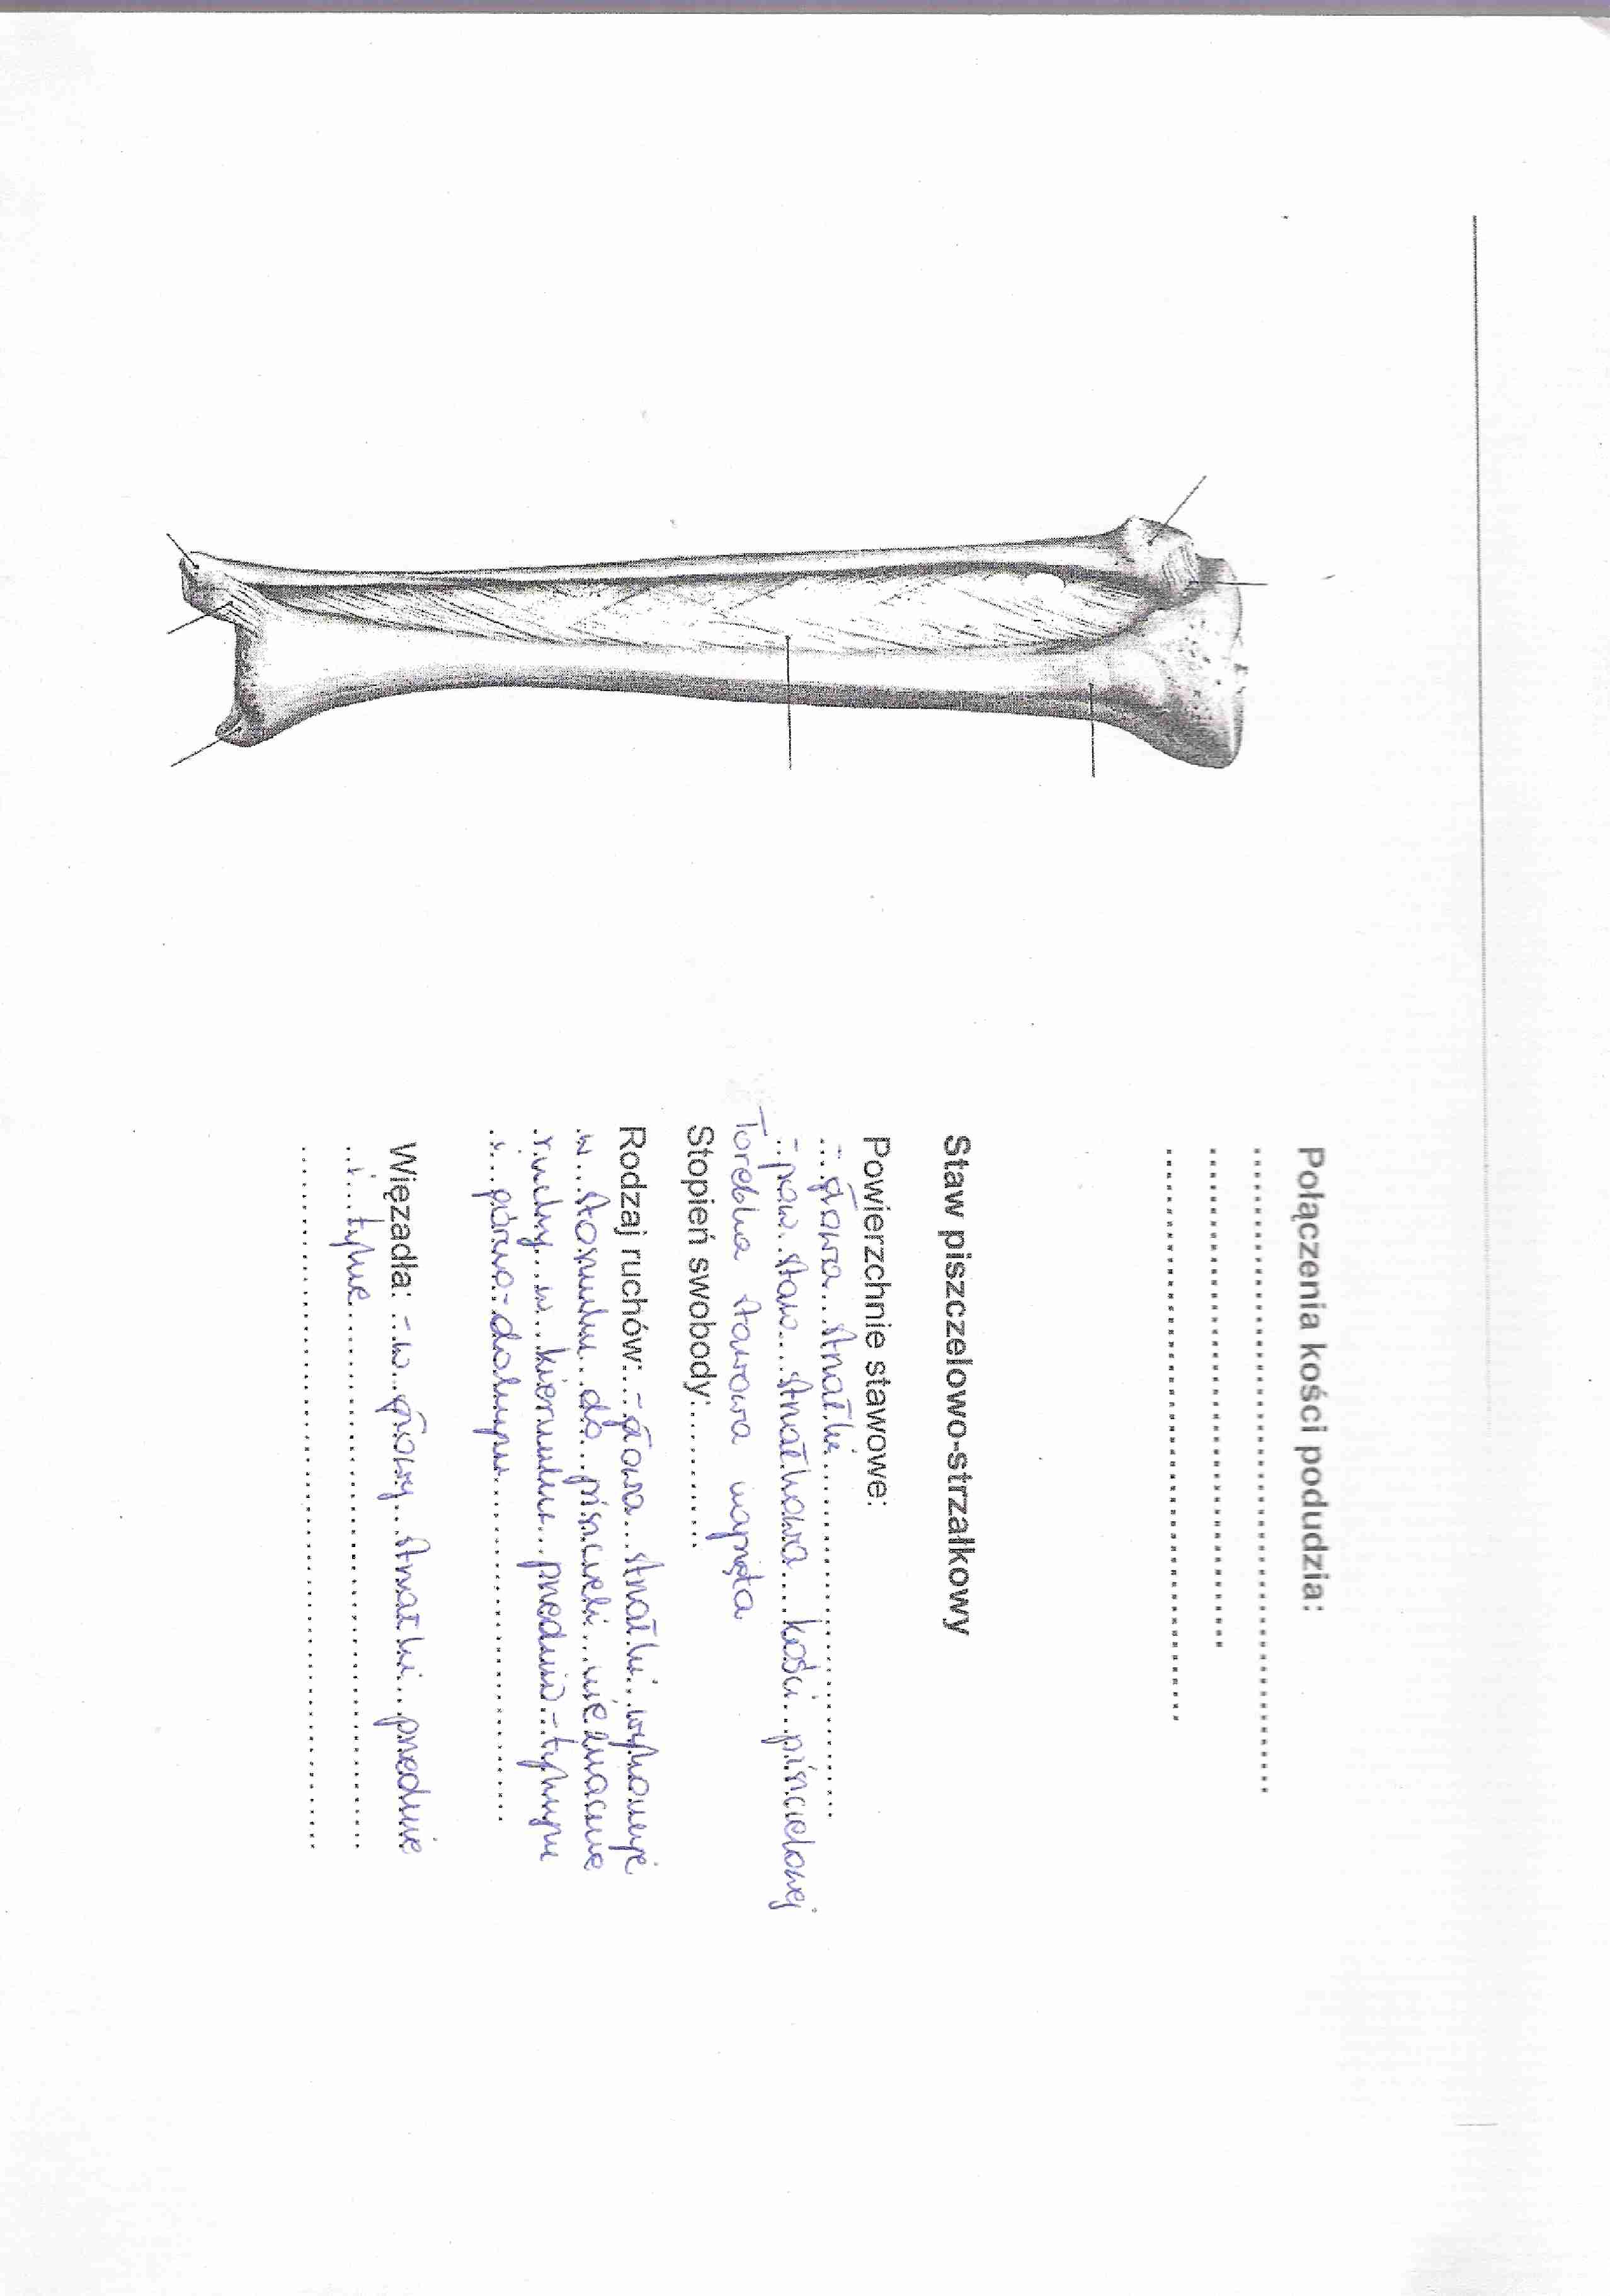 anatomia kończyna dolna stawy i mięśnie 2 - strona 1